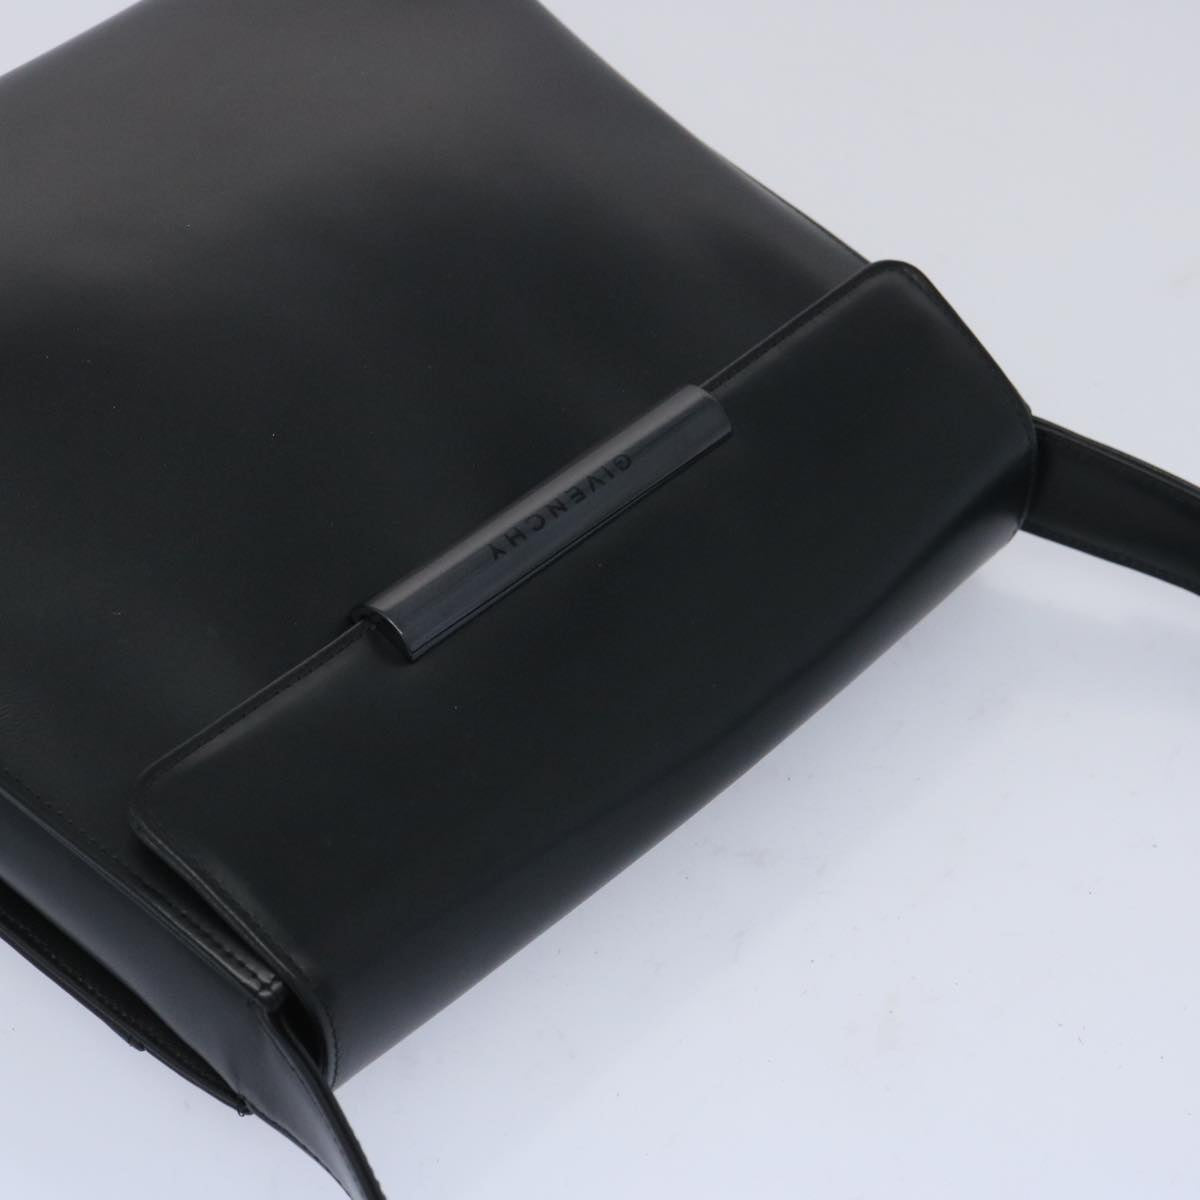 GIVENCHY Shoulder Bag Leather Black Auth am5639